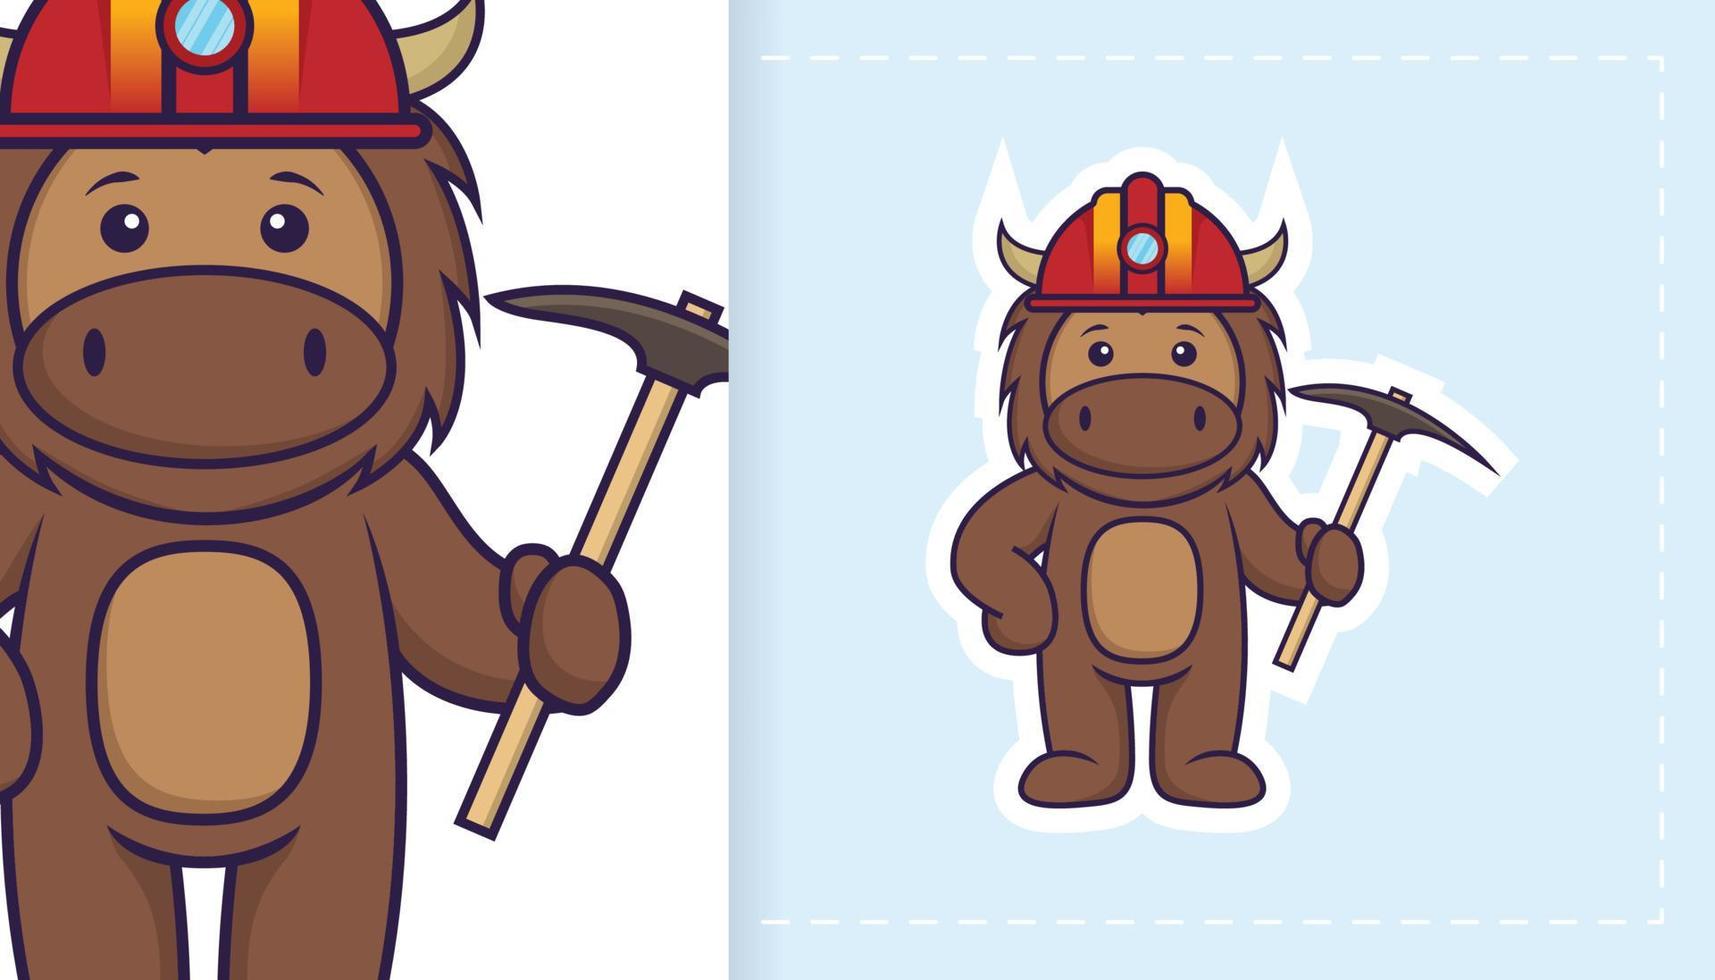 personagem de mascote de touro bonito. pode ser usado para adesivos, patches, têxteis, papel. ilustração vetorial vetor